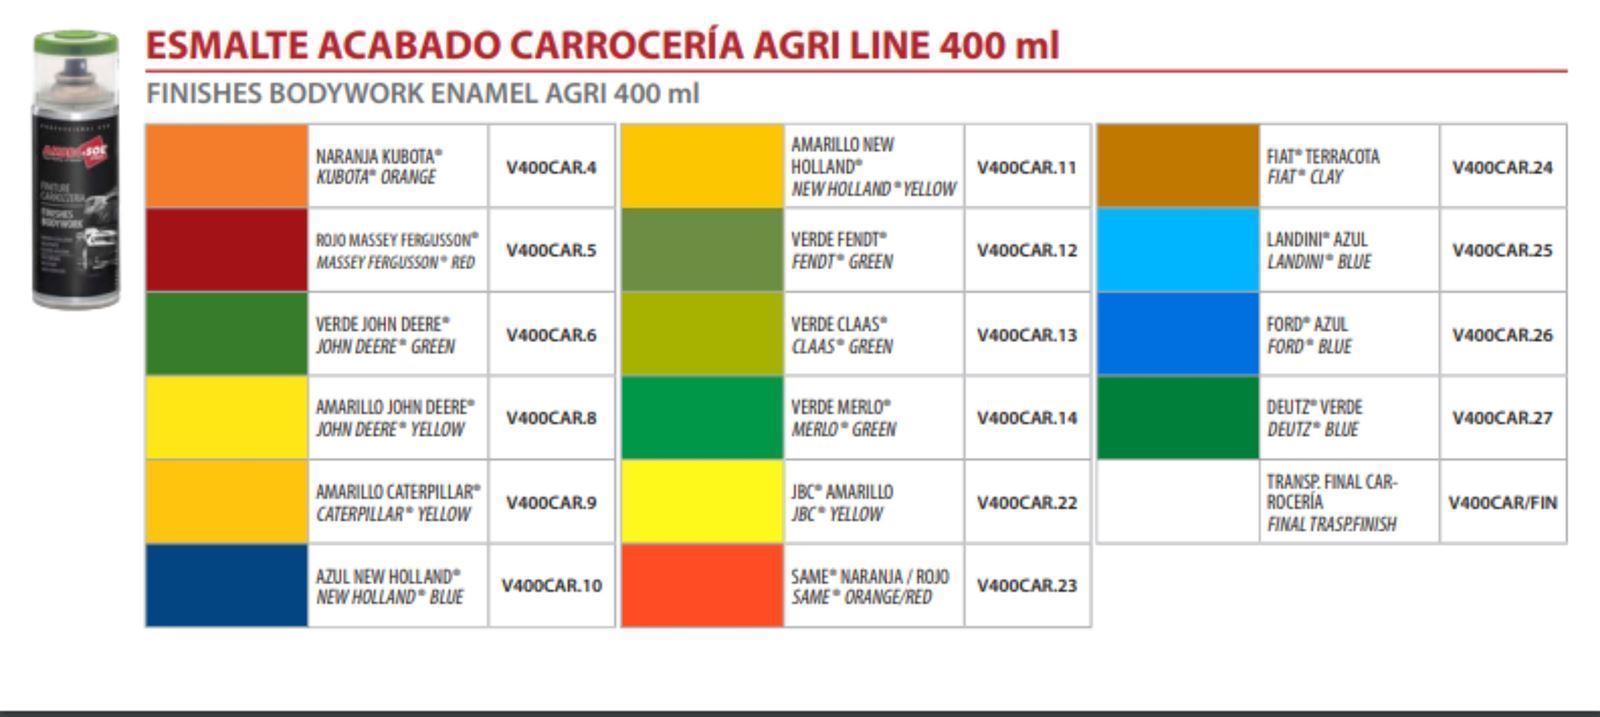 SPRAY CARROCERIAS LINEA AGRI - Imagen 2